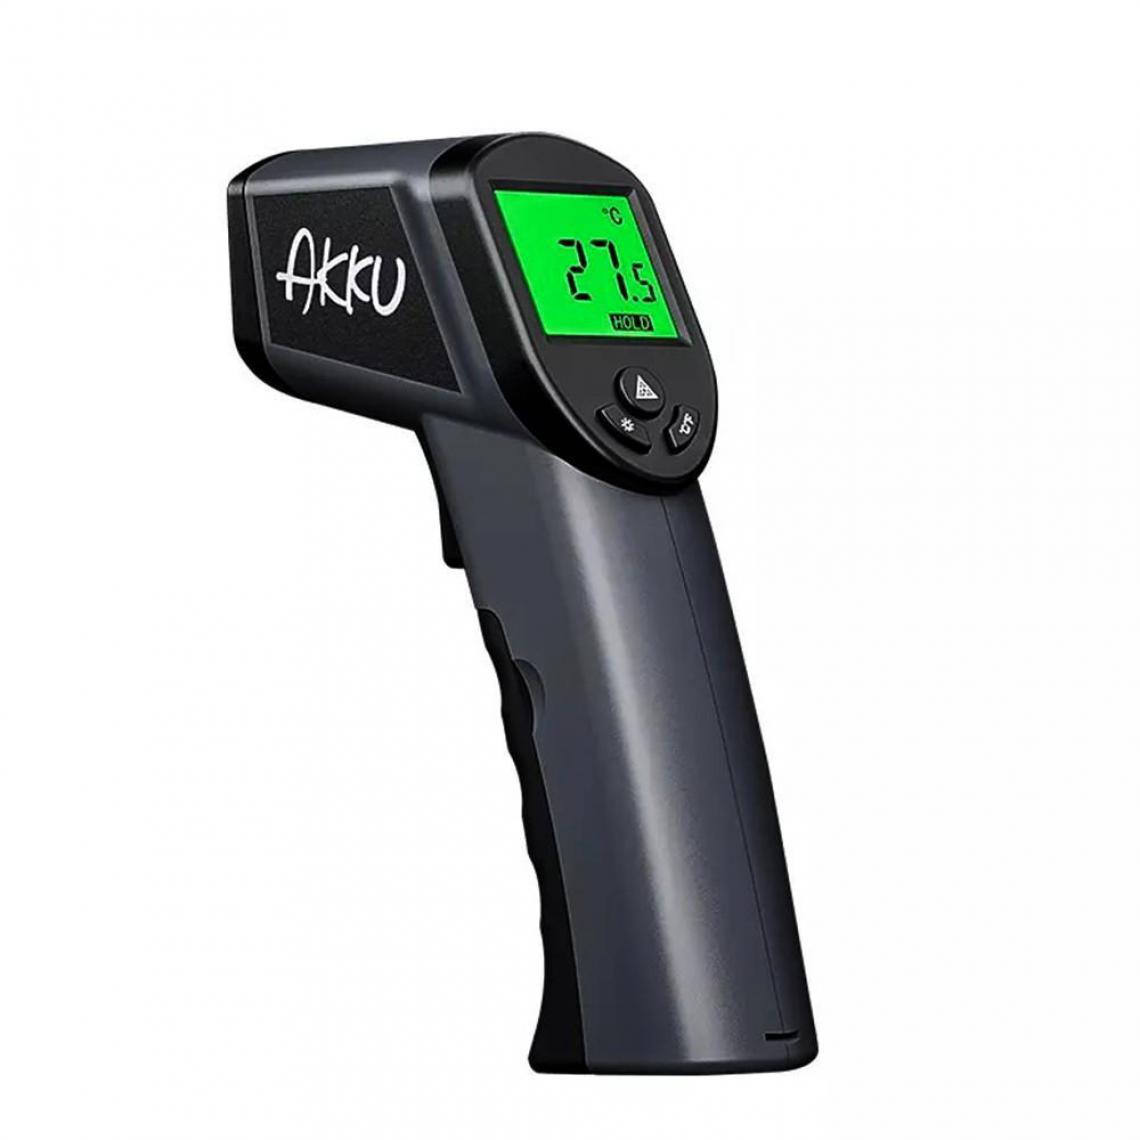 Justgreenbox - Thermomètre infrarouge pour écran LCD HD de détection de température laser de l'industrie 50 ~ 380â - 3654657662783 - Appareils de mesure